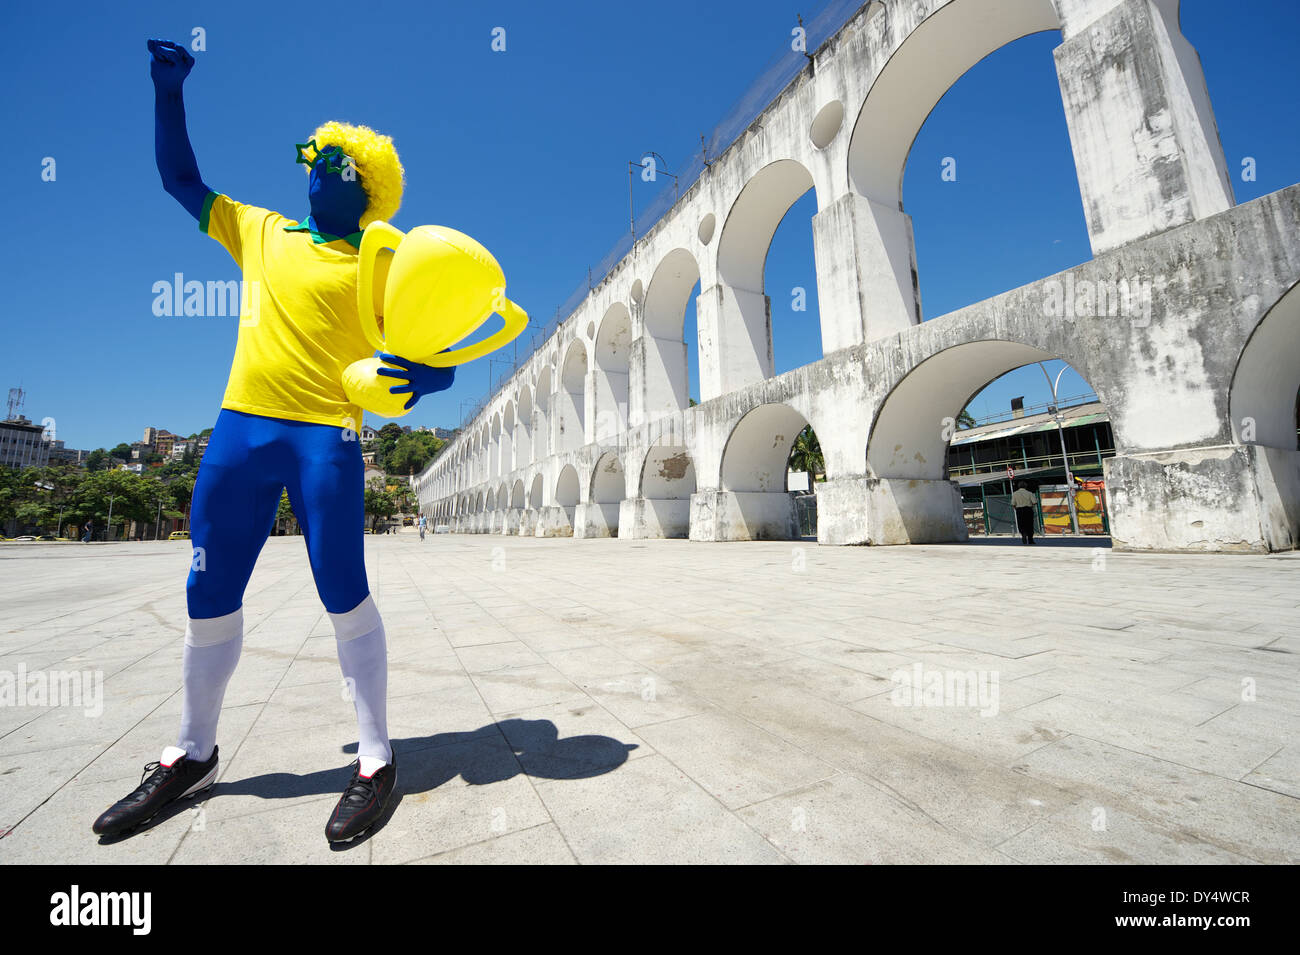 Joueur de football brésilien bleu excité holding trophy célébrer en couleurs de l'équipe à Rio de Janeiro Banque D'Images